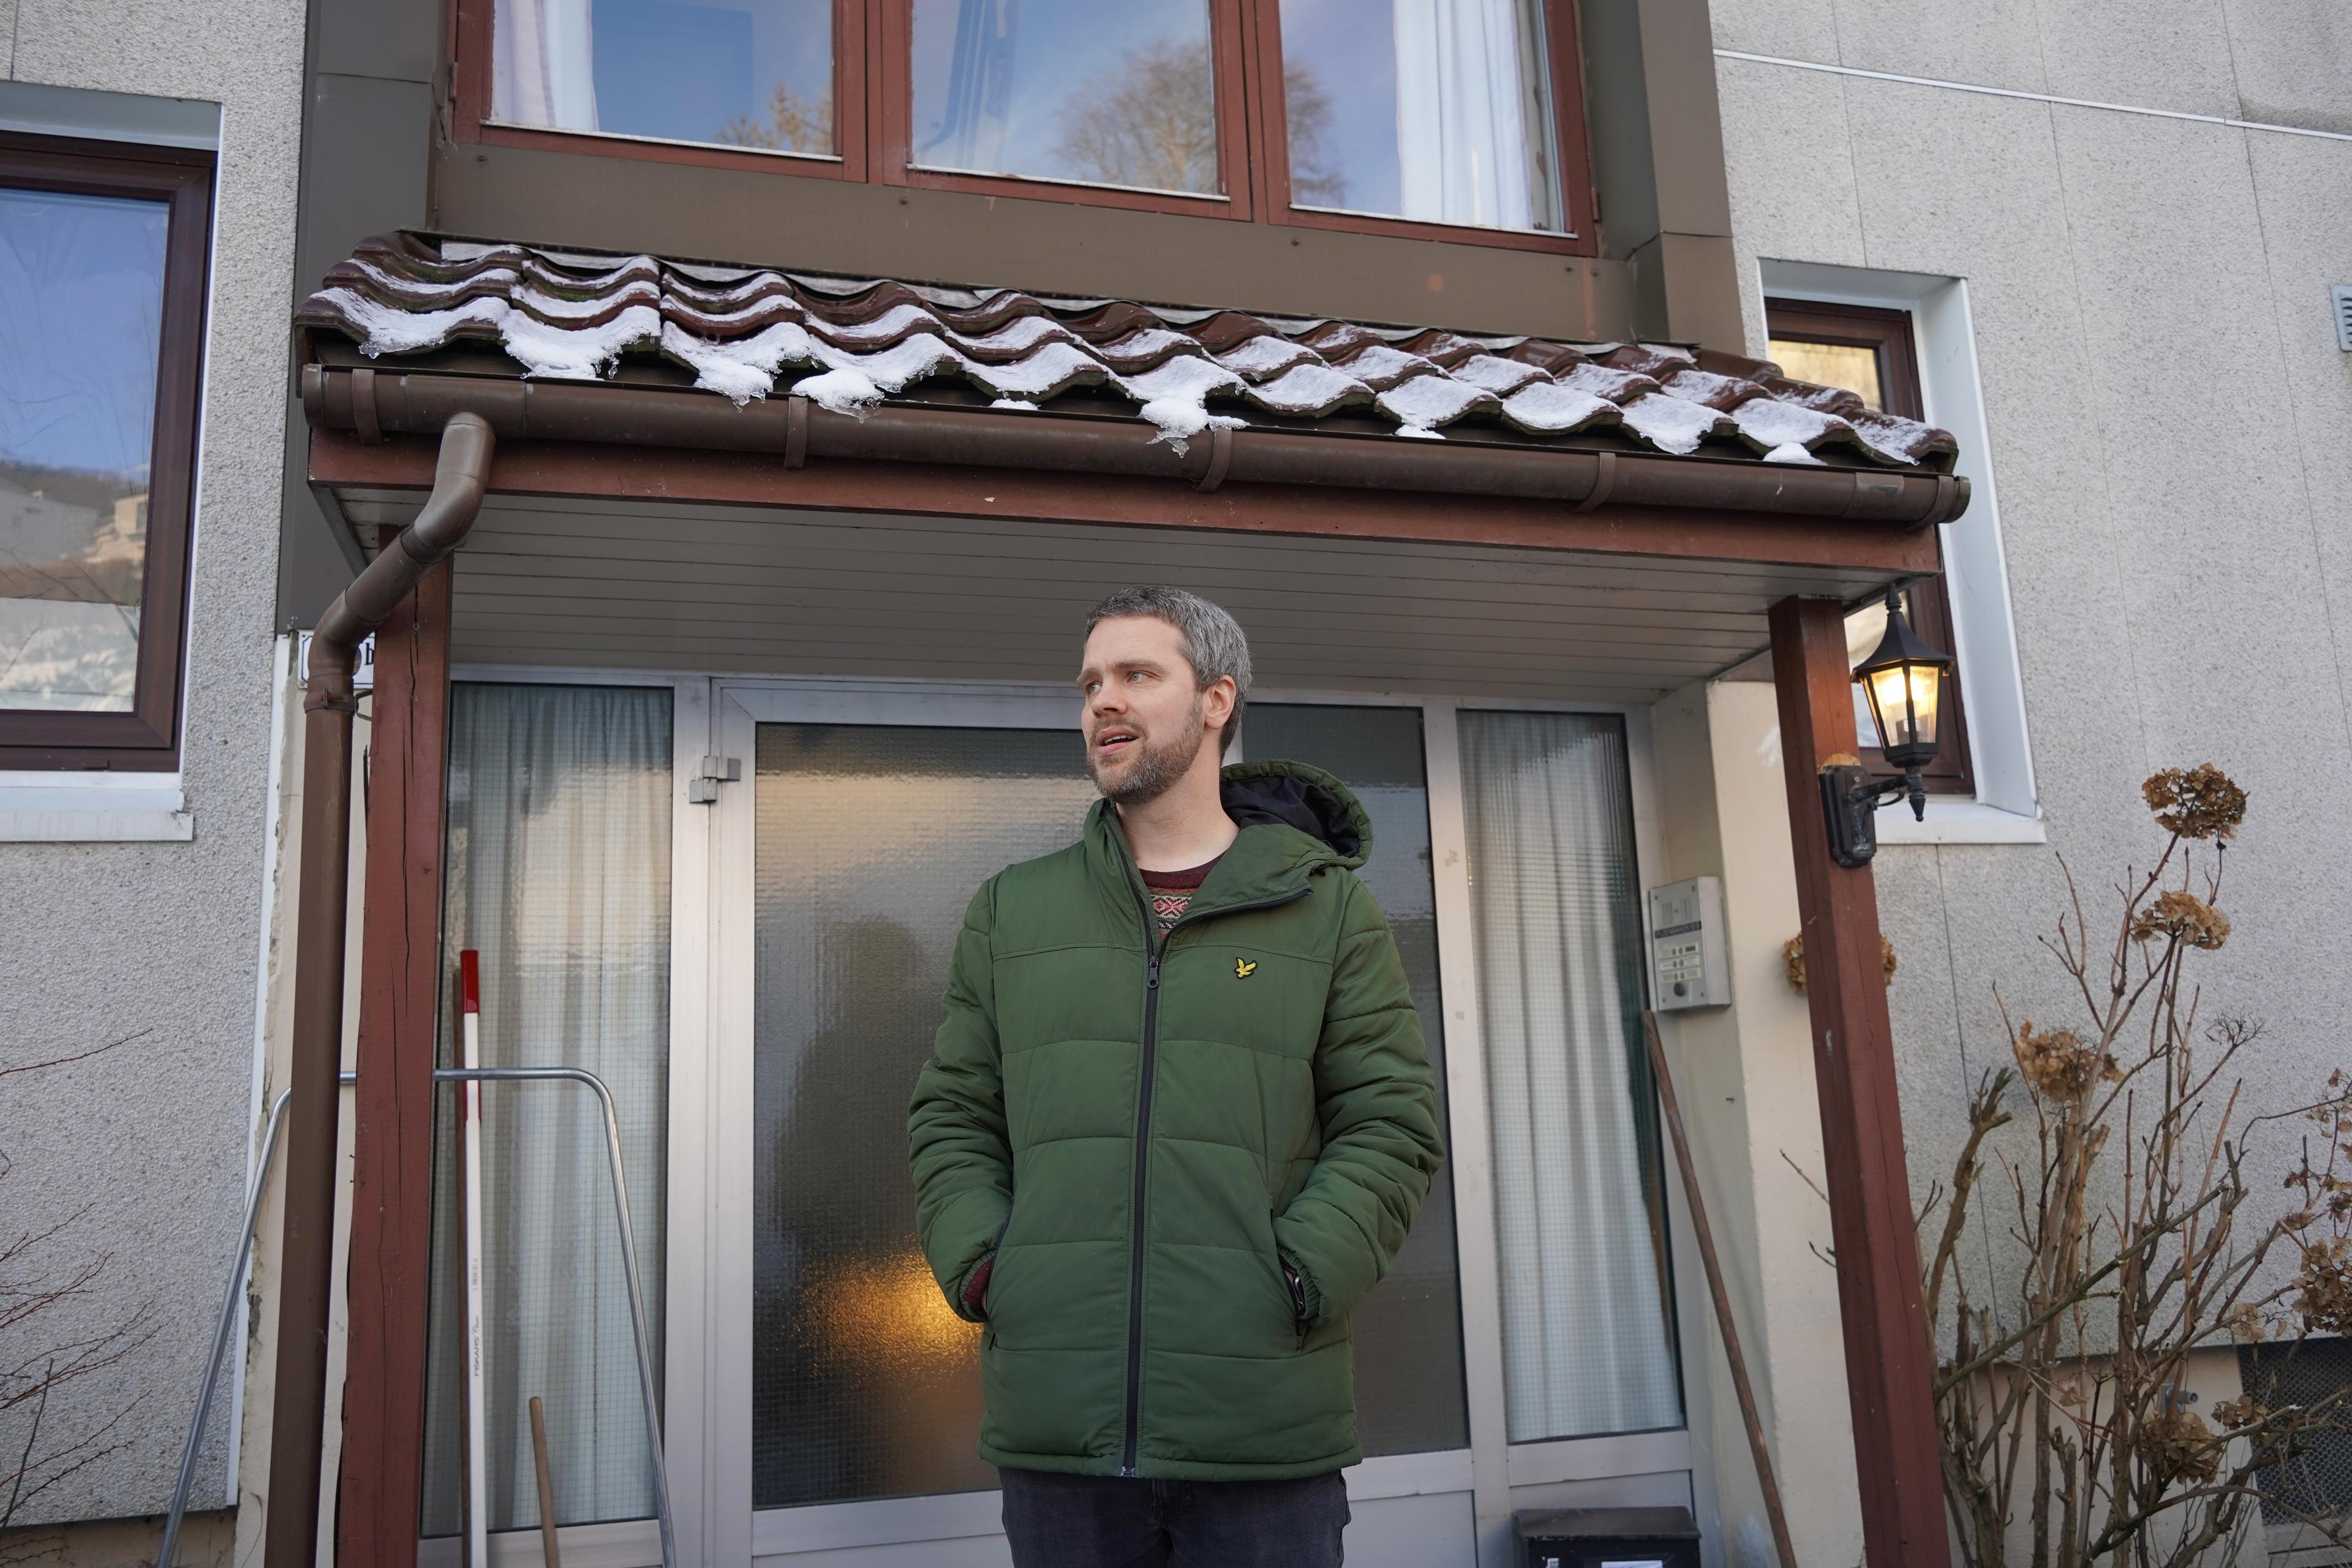 Komponisten Ørjan Matre står foran en inngangsdør. Han er kledd i en grønn ytterjakke.